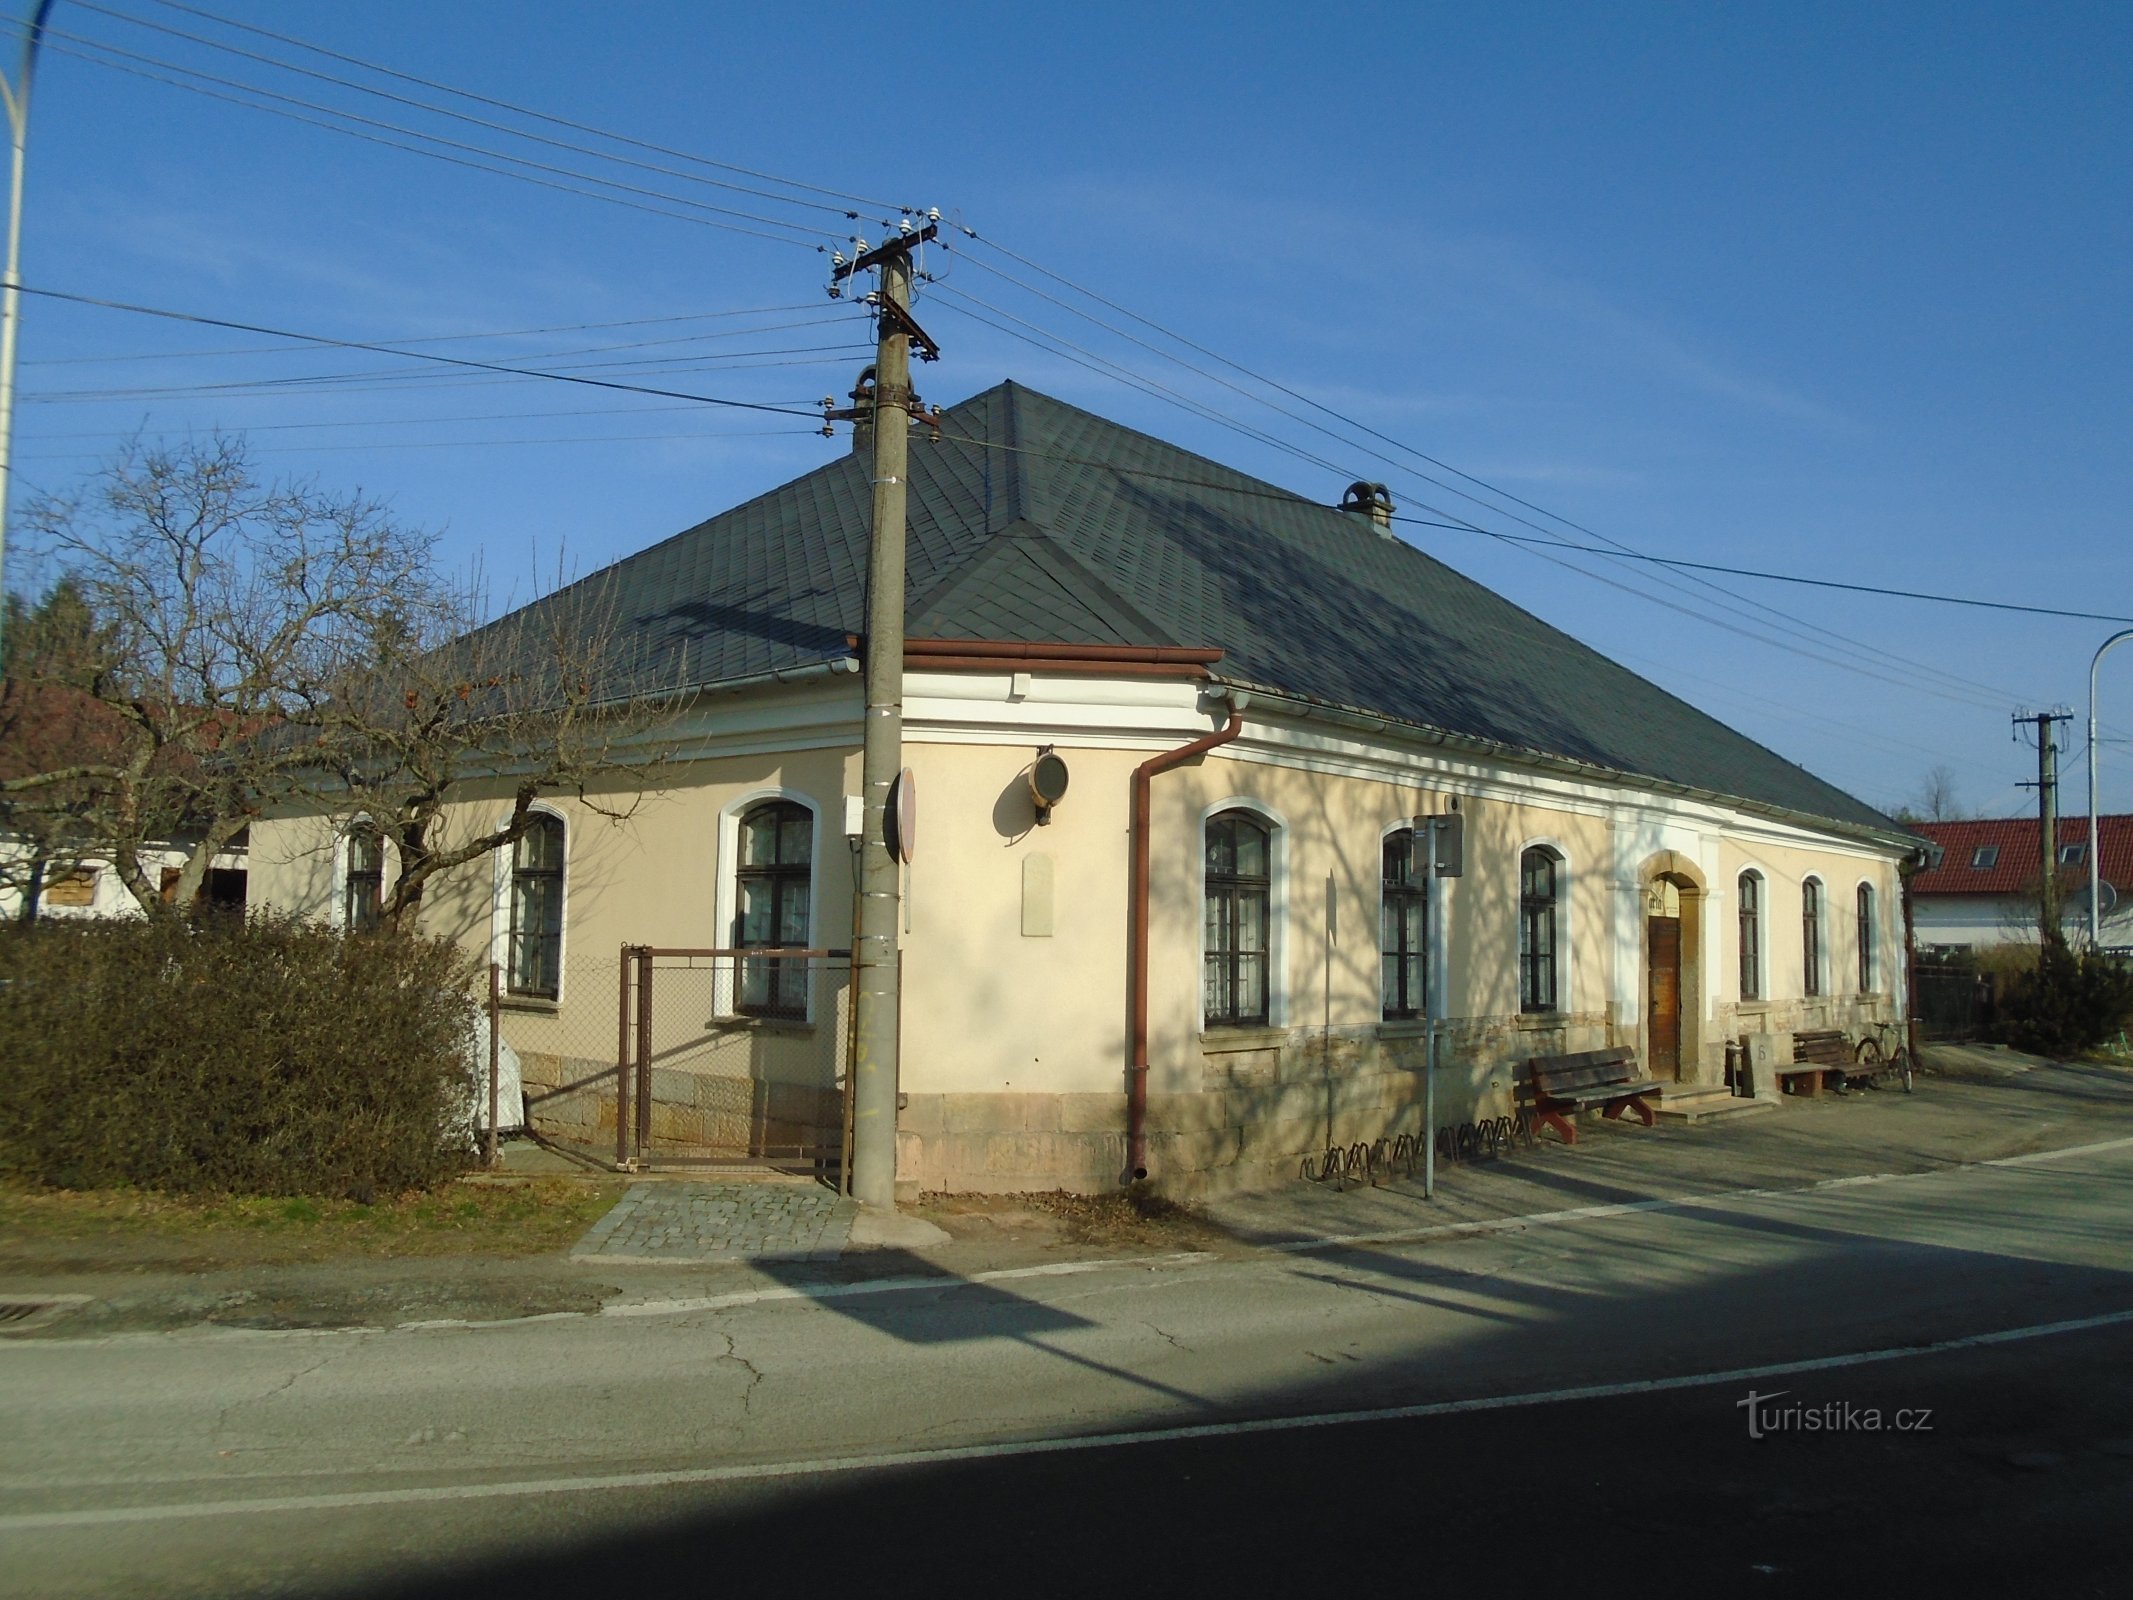 Podhůrská n° 76 (Hradec Králové, 23.1.2019 janvier XNUMX)